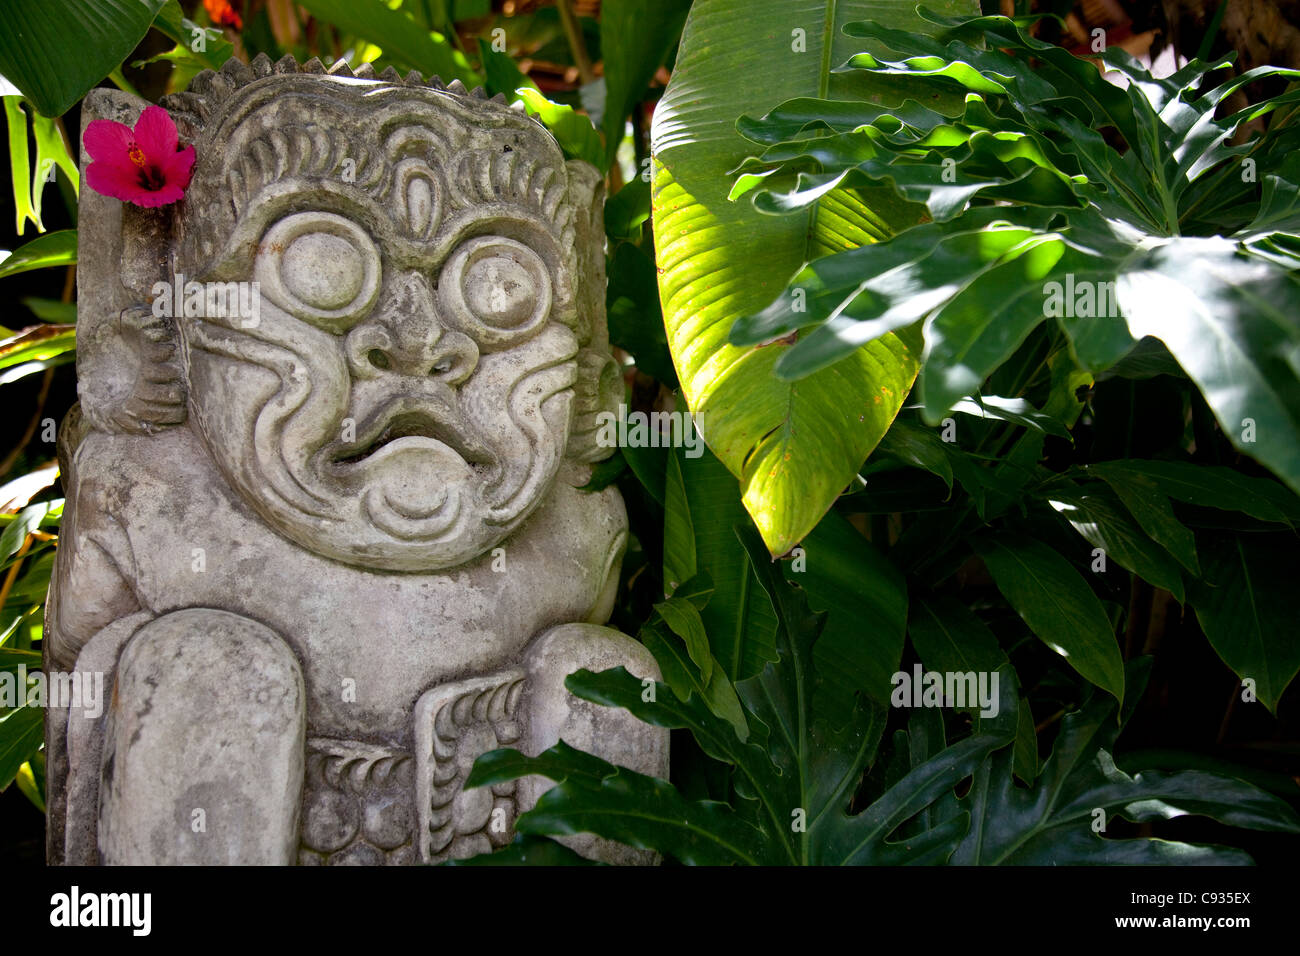 Bali, Ubud. Une sculpture en pierre, ornée d'une fleur d'hibiscus, se trouve dans des jardins tropicaux. Banque D'Images